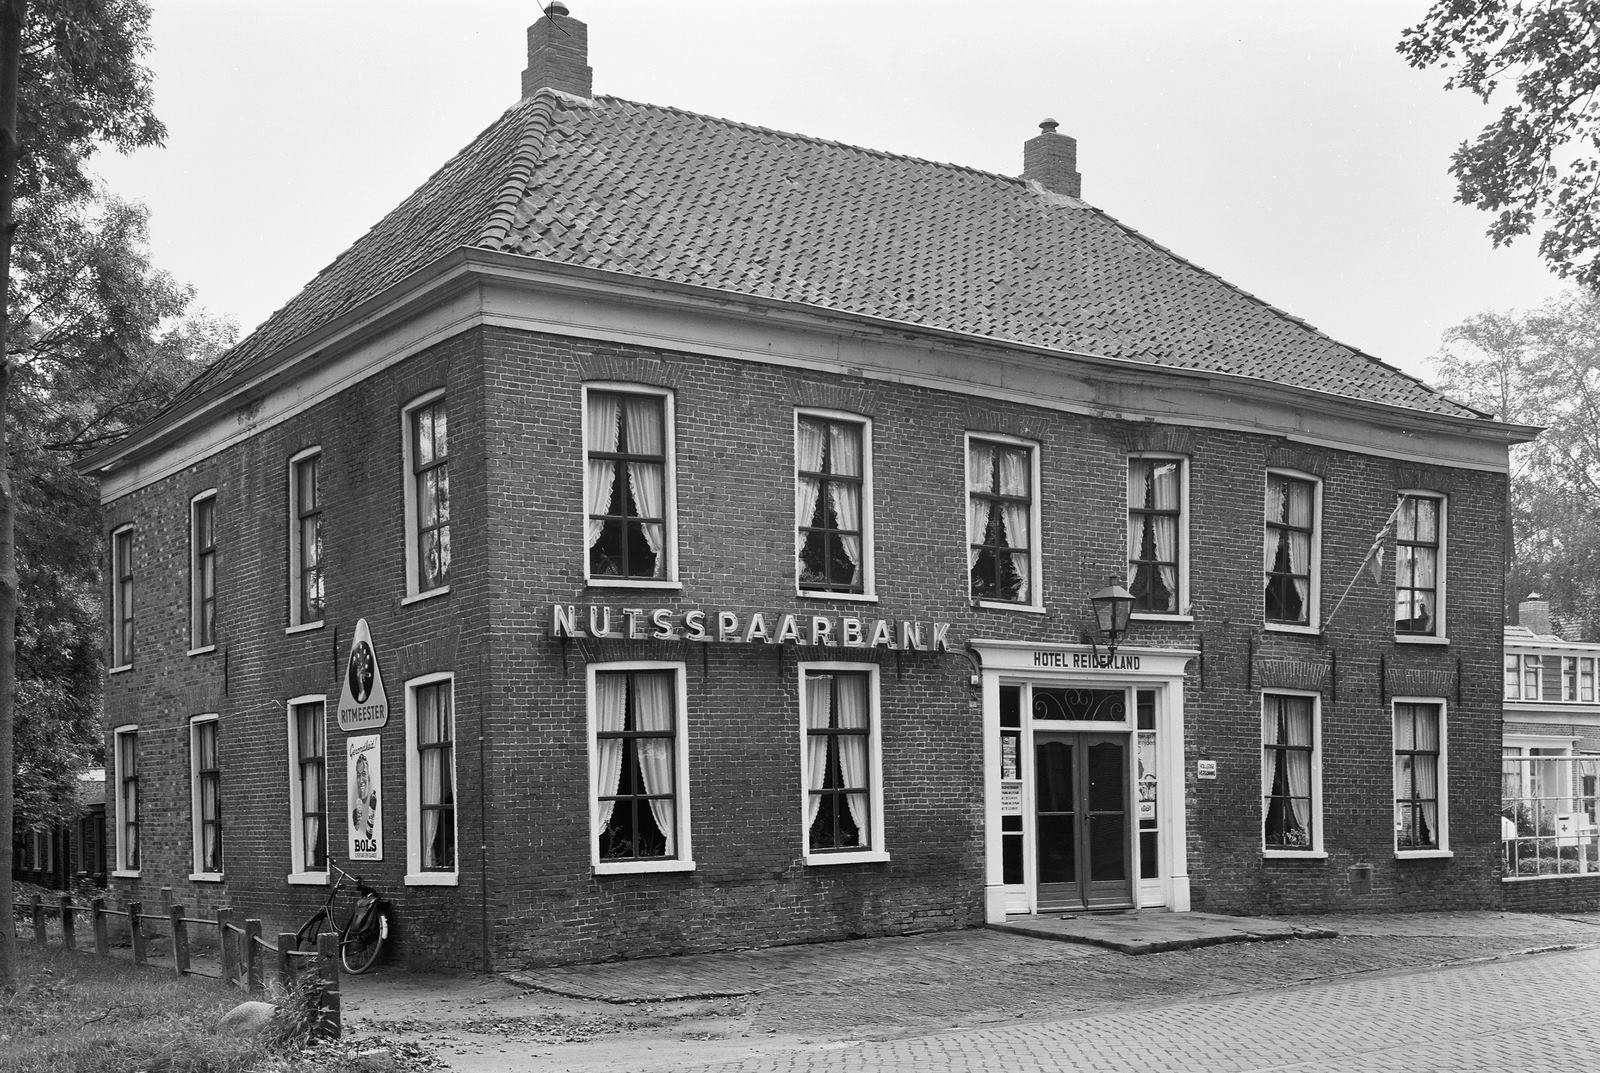 De Nutsspraarbank is ook gevestigd geweest in Hotel Reiderland.